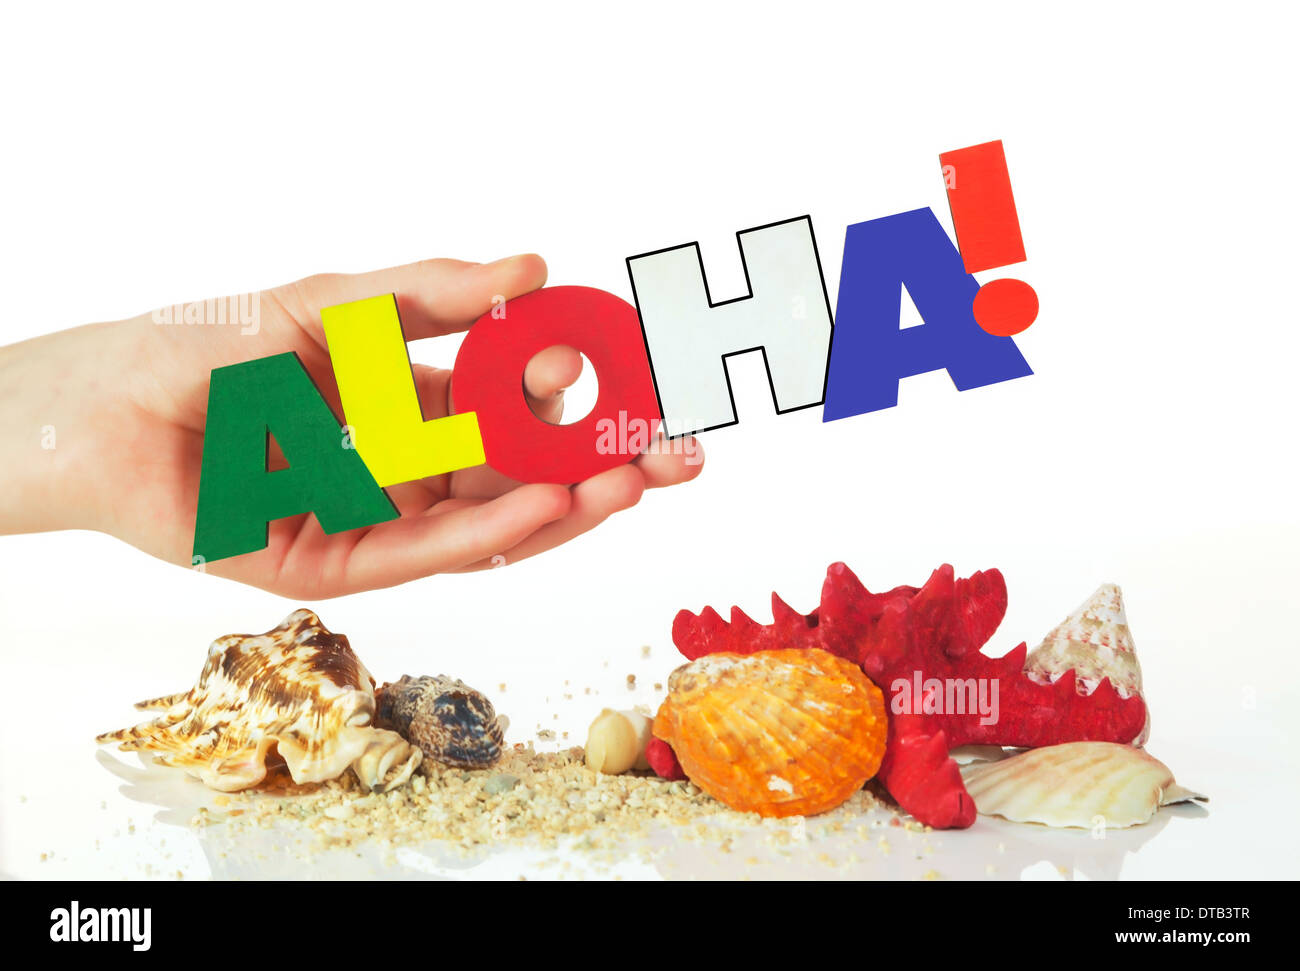 Femmina di mano azienda colorita parola Aloha contro uno sfondo bianco Foto Stock